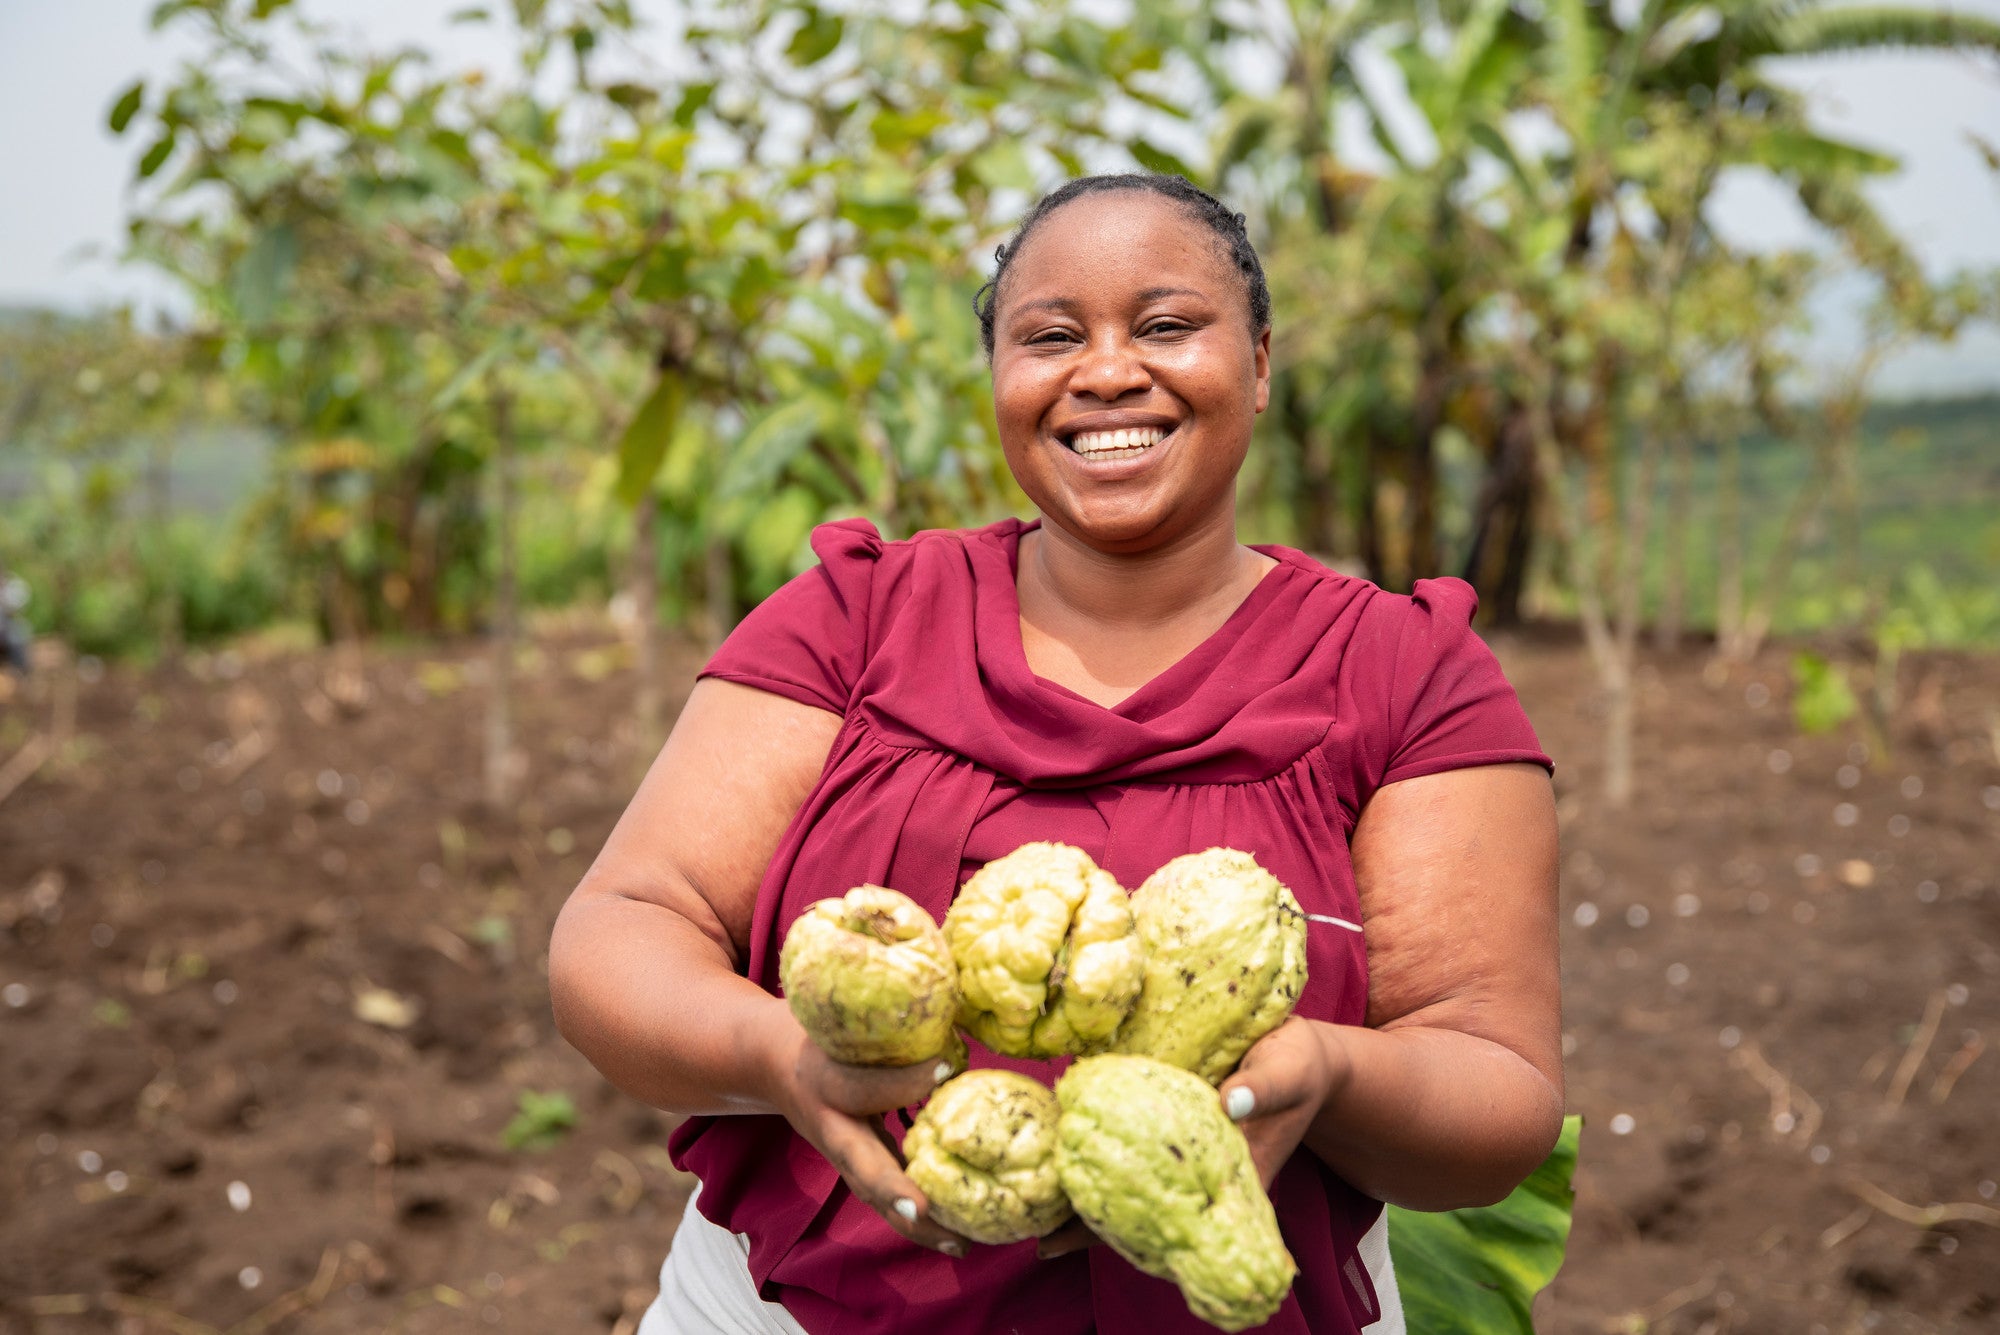 Isabelle Niyotwagirwa présente ses Luffas bio dans sa ferme de Mutaho. Ayant identifié une lacune sur le marché, Isabelle est passée de la vente de marchandises au marché à l'agriculture. Grâce à l'agriculture, elle fournit non seulement des fruits frais à des prix abordables à la communauté, mais emploie également des femmes et des jeunes dans ses fermes.